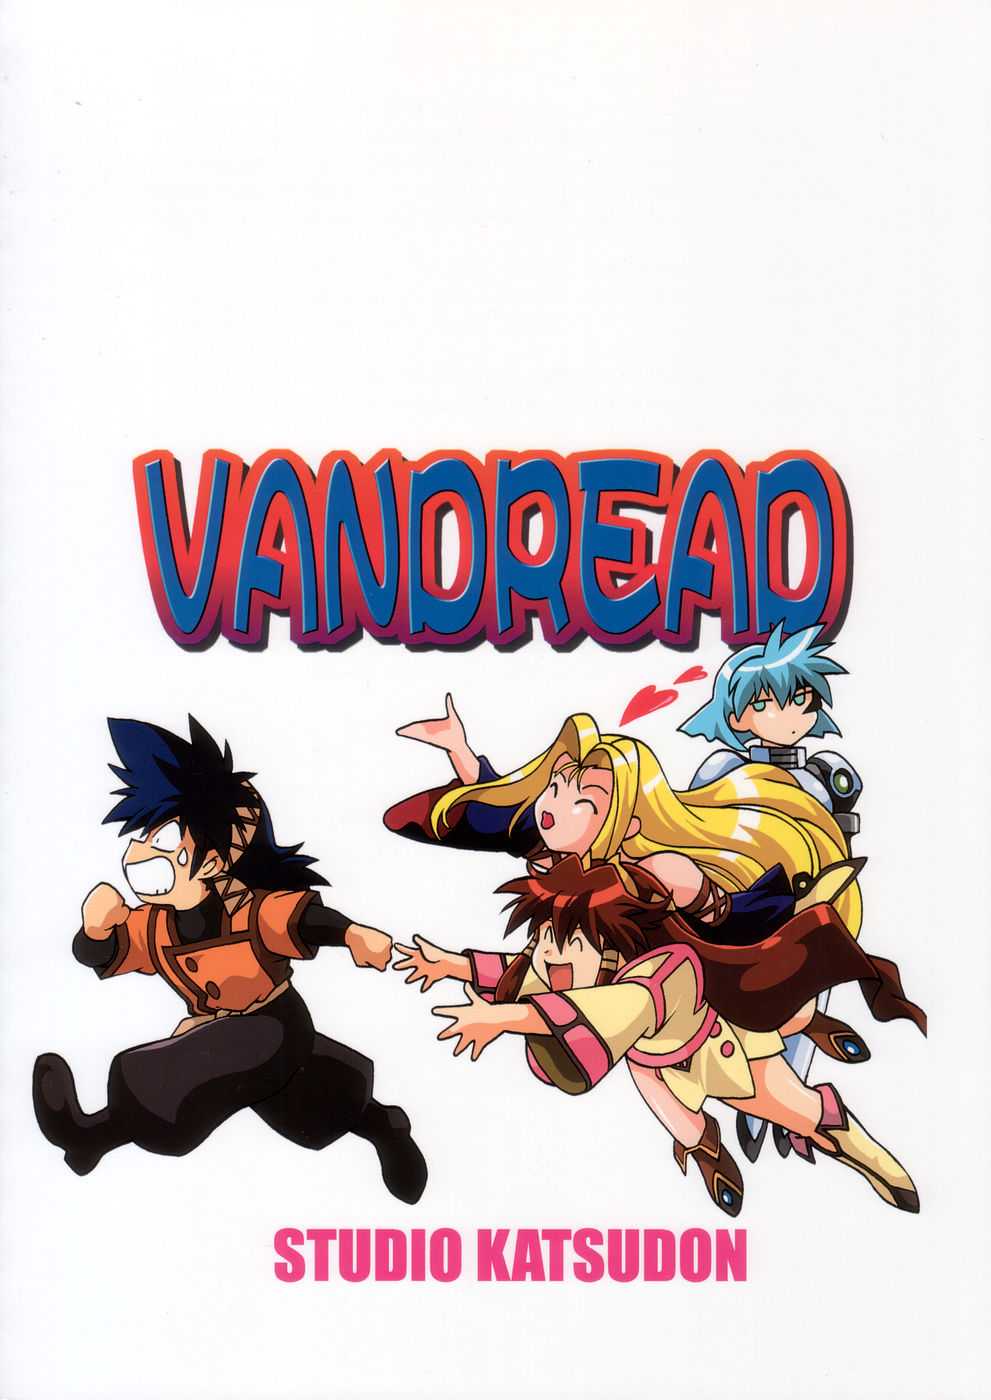 Vandread All Characters Book (J) 